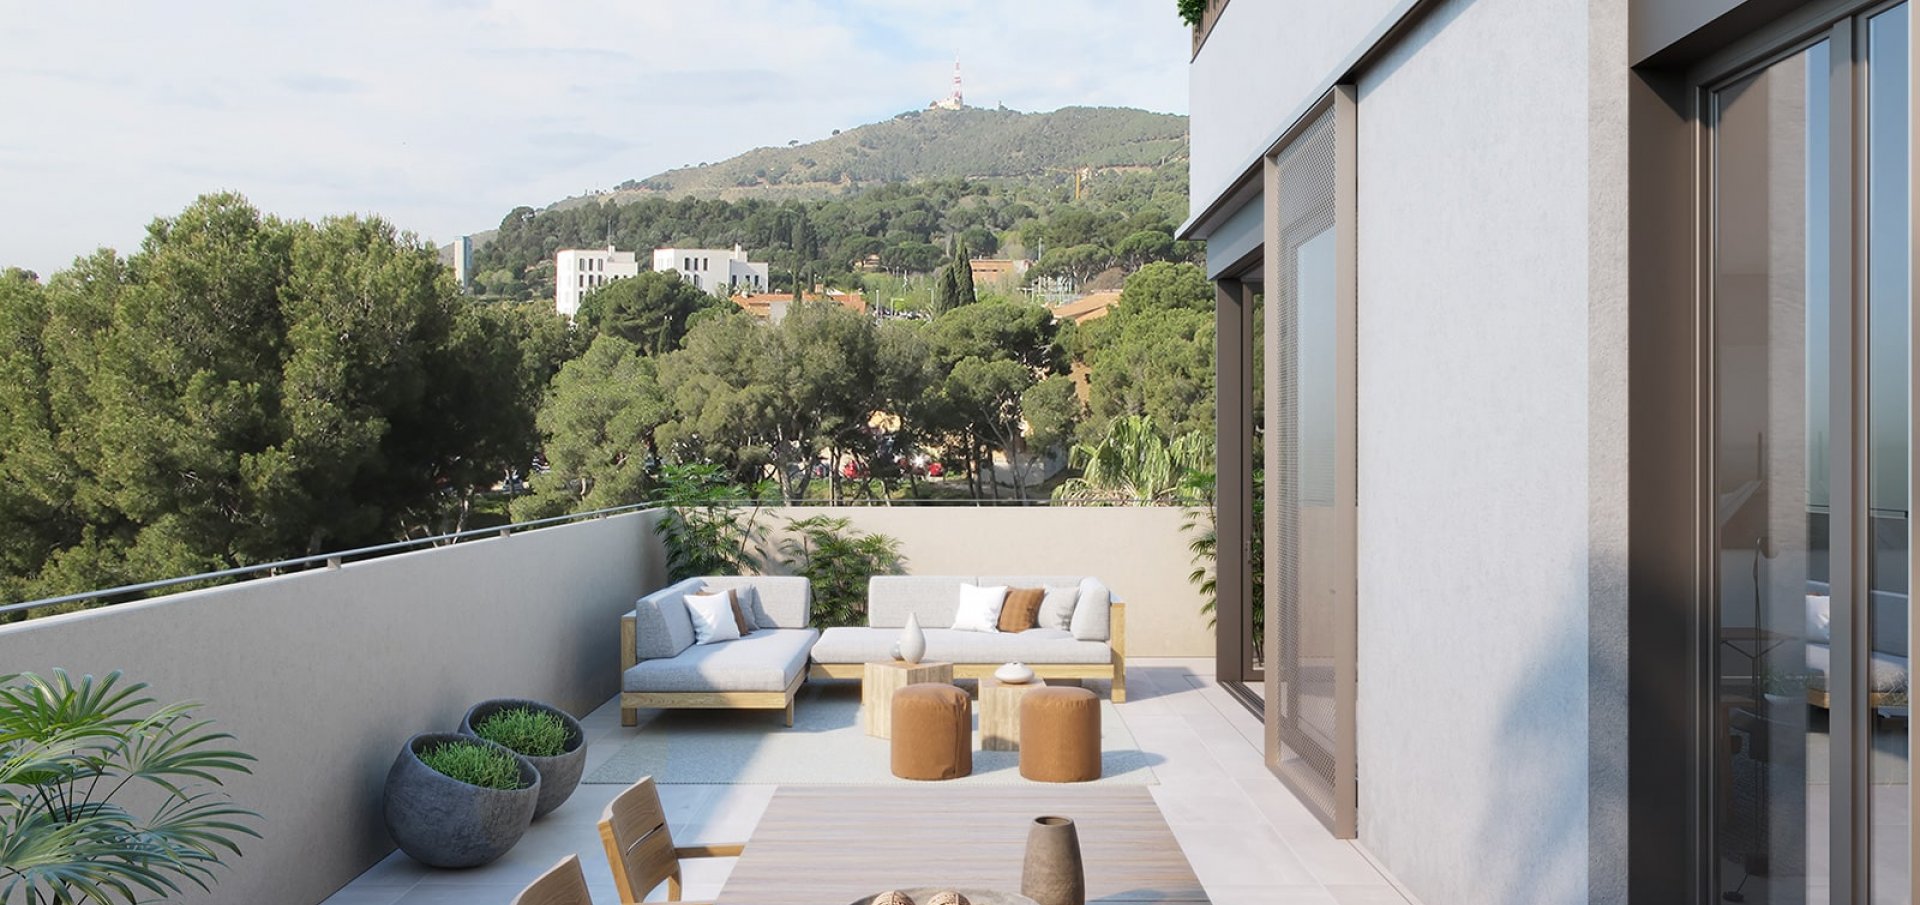 Terraza con vistas al paraje natural en el que se encuentran las viviendas de la promoción de Sarrià en Barcelona